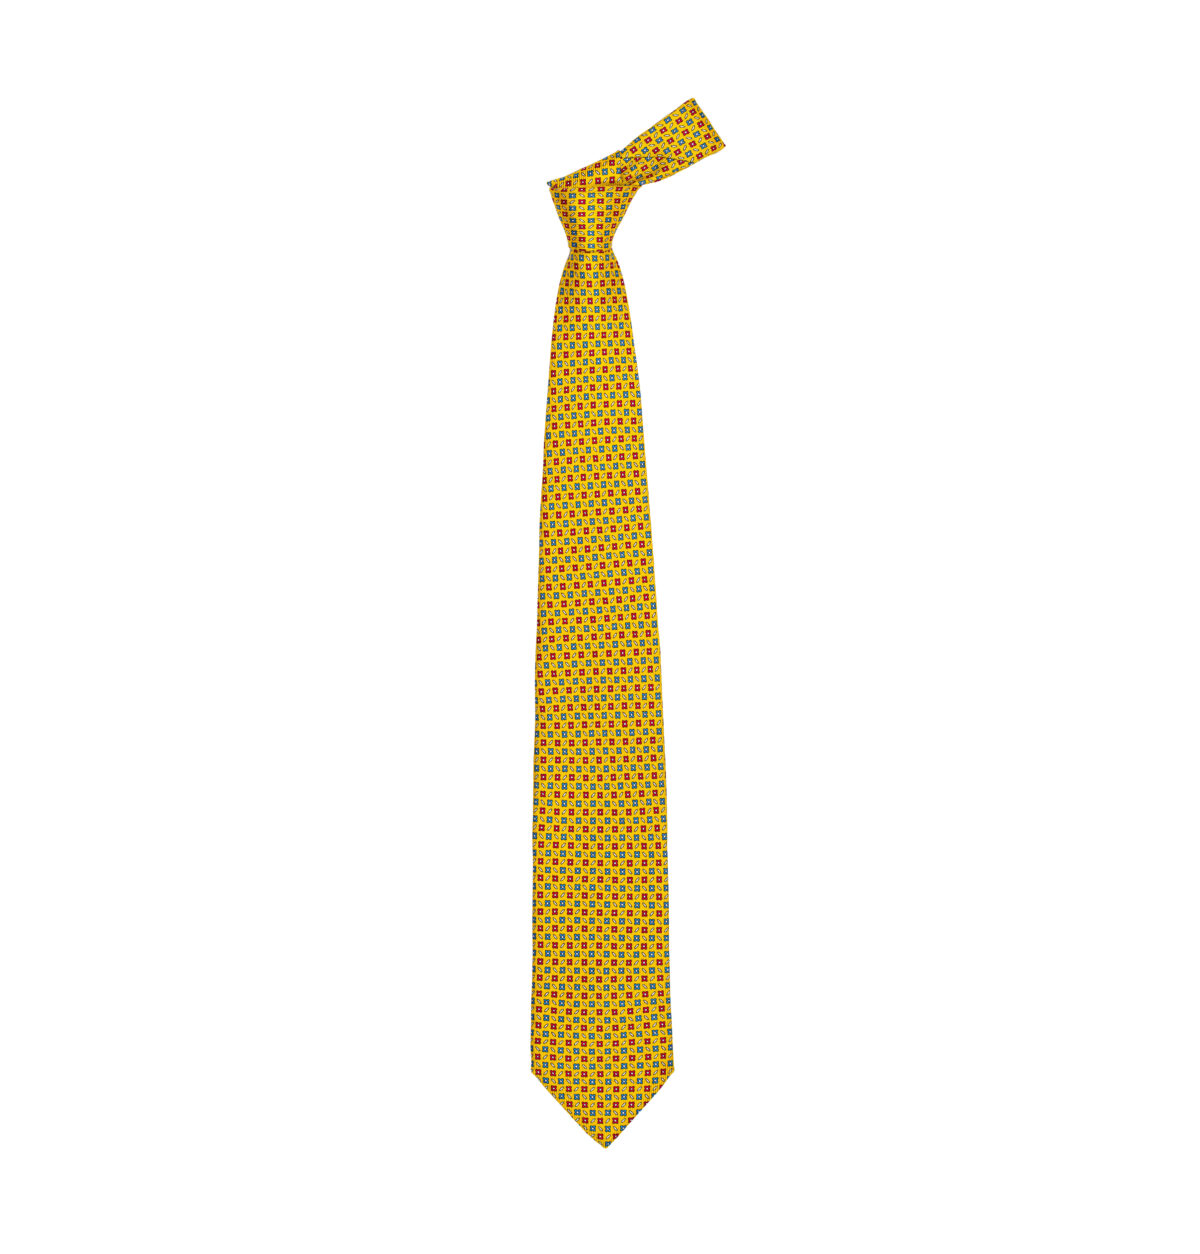 Cepparulo Sartoria Italiana Cravatta di seta 100% MADE IN ITALY